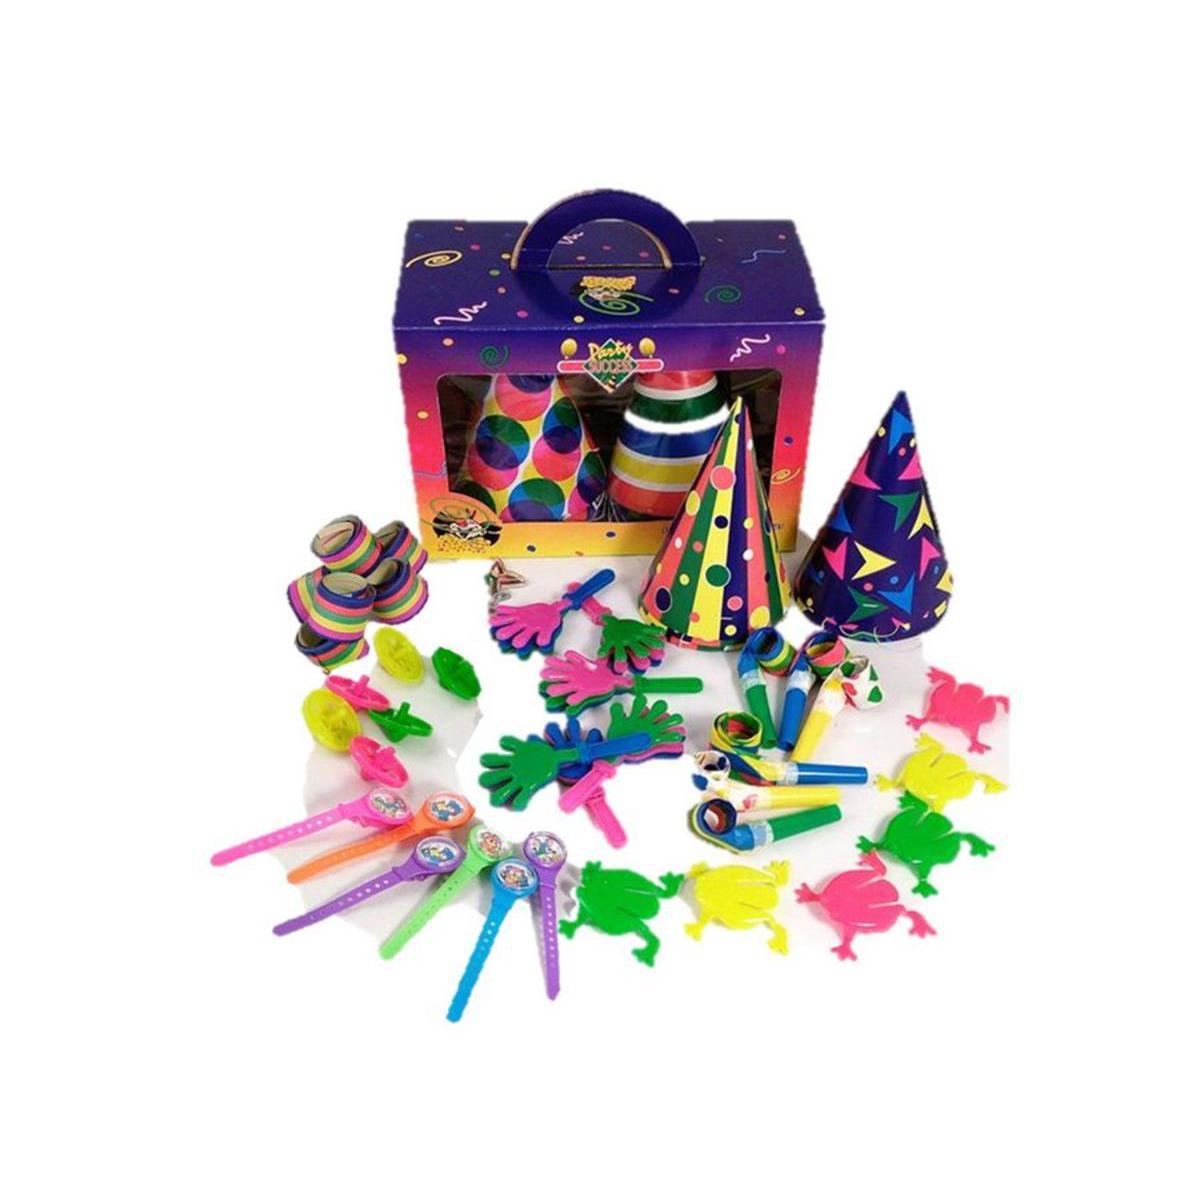 Boîte fête 6 enfants - Papier et carton - 26 x 11,6 x 18 cm - Multicolore